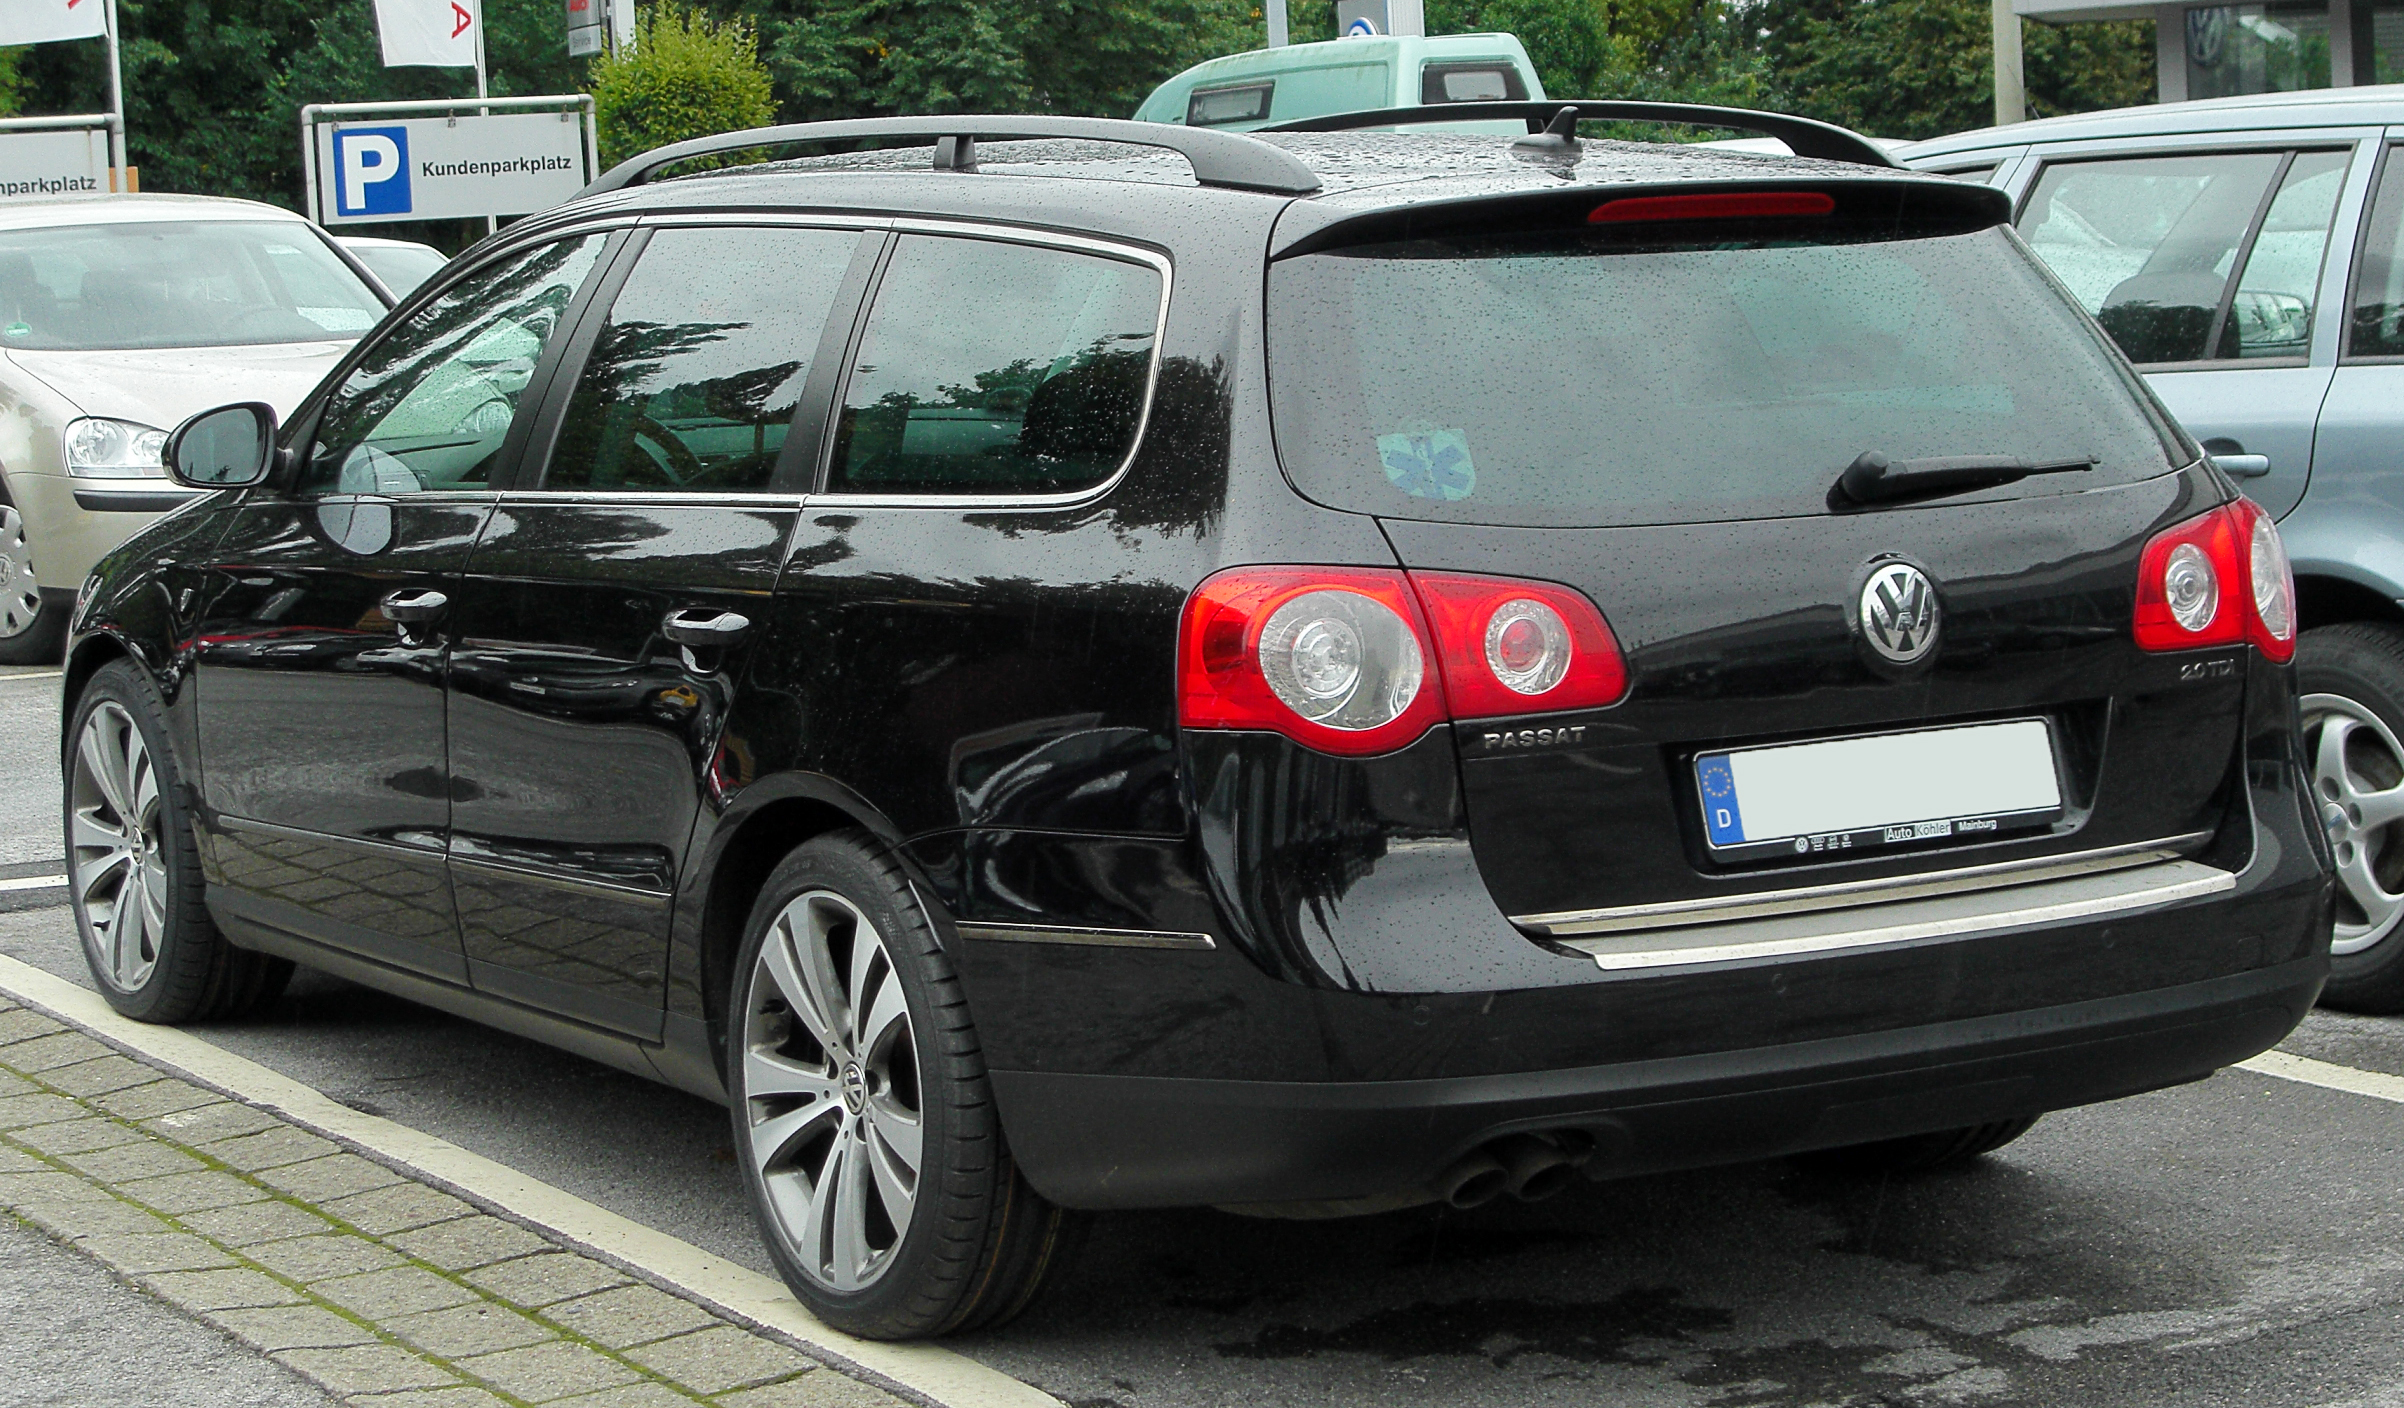 File:VW Passat B6 Variant 2.0 TDI Individual rear 20100829.jpg - Wikipedia